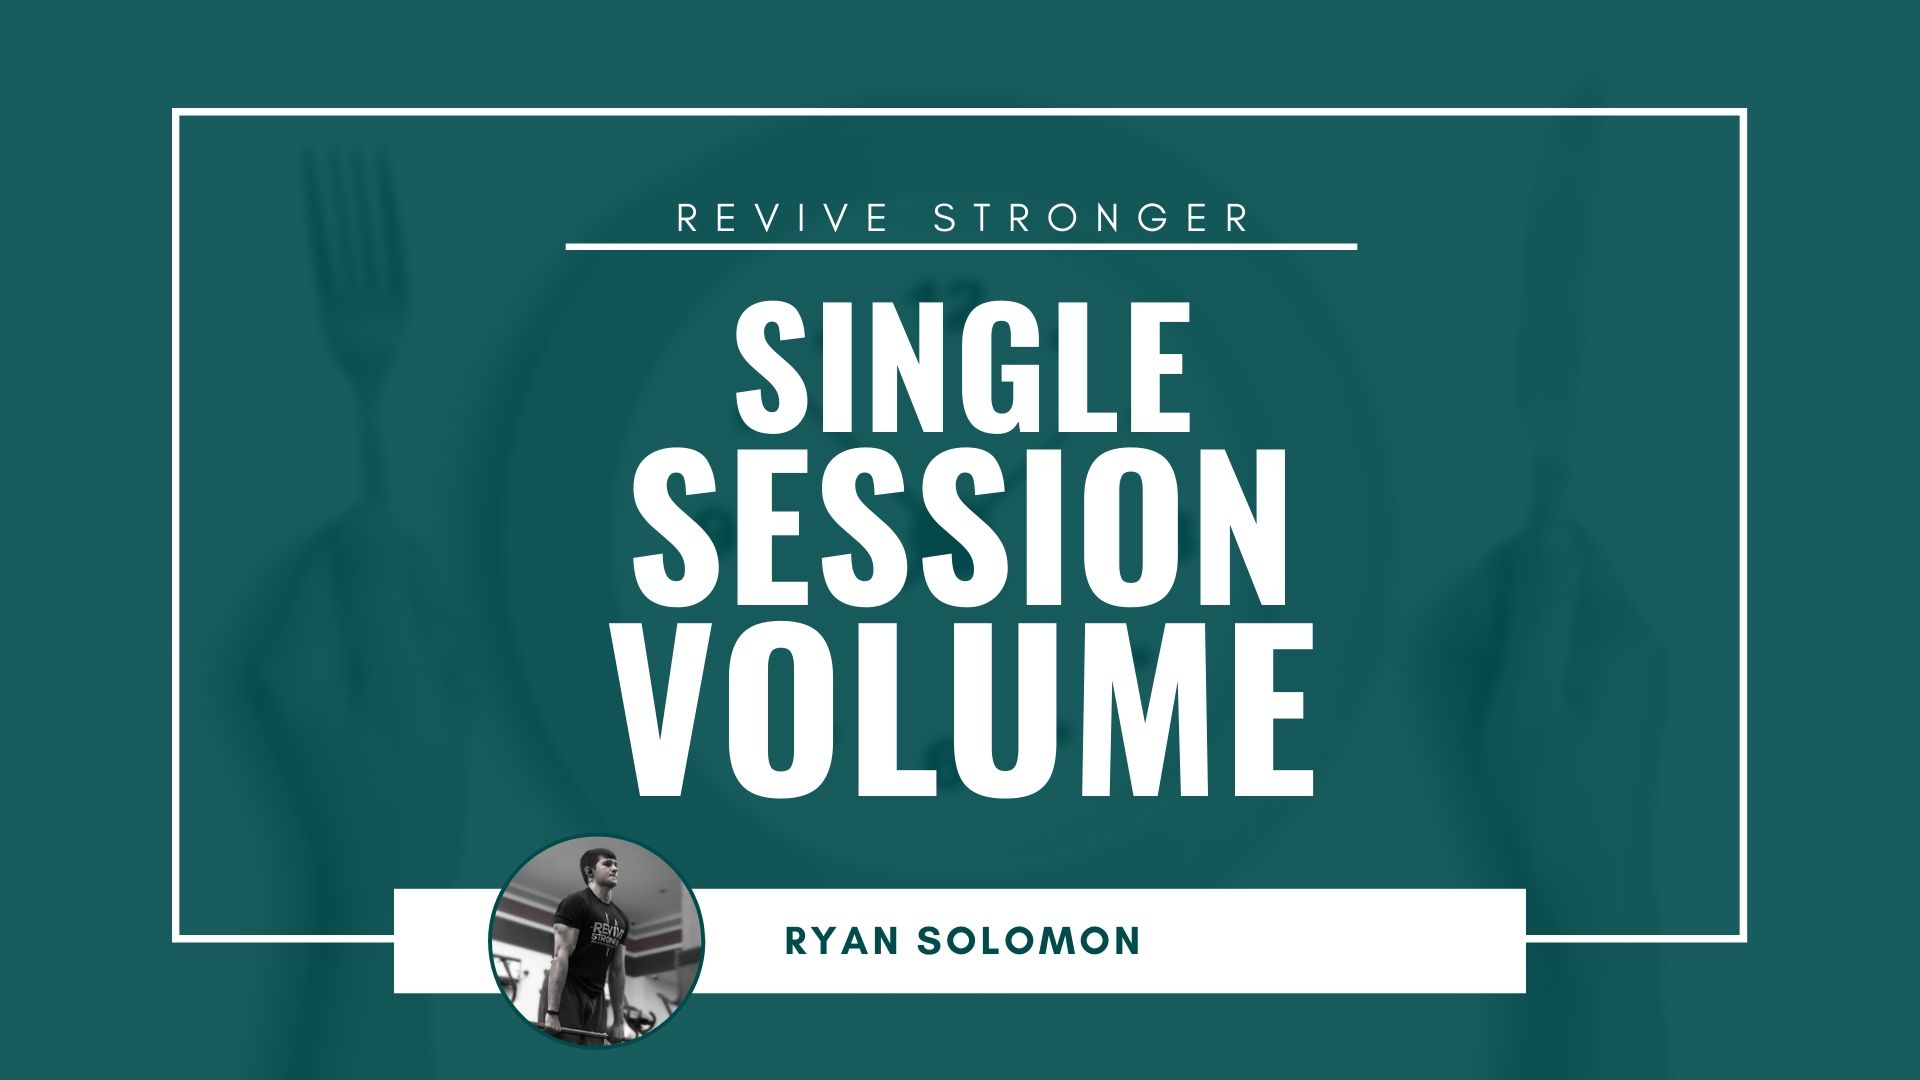 Single Session Volume - Ryan Solomon